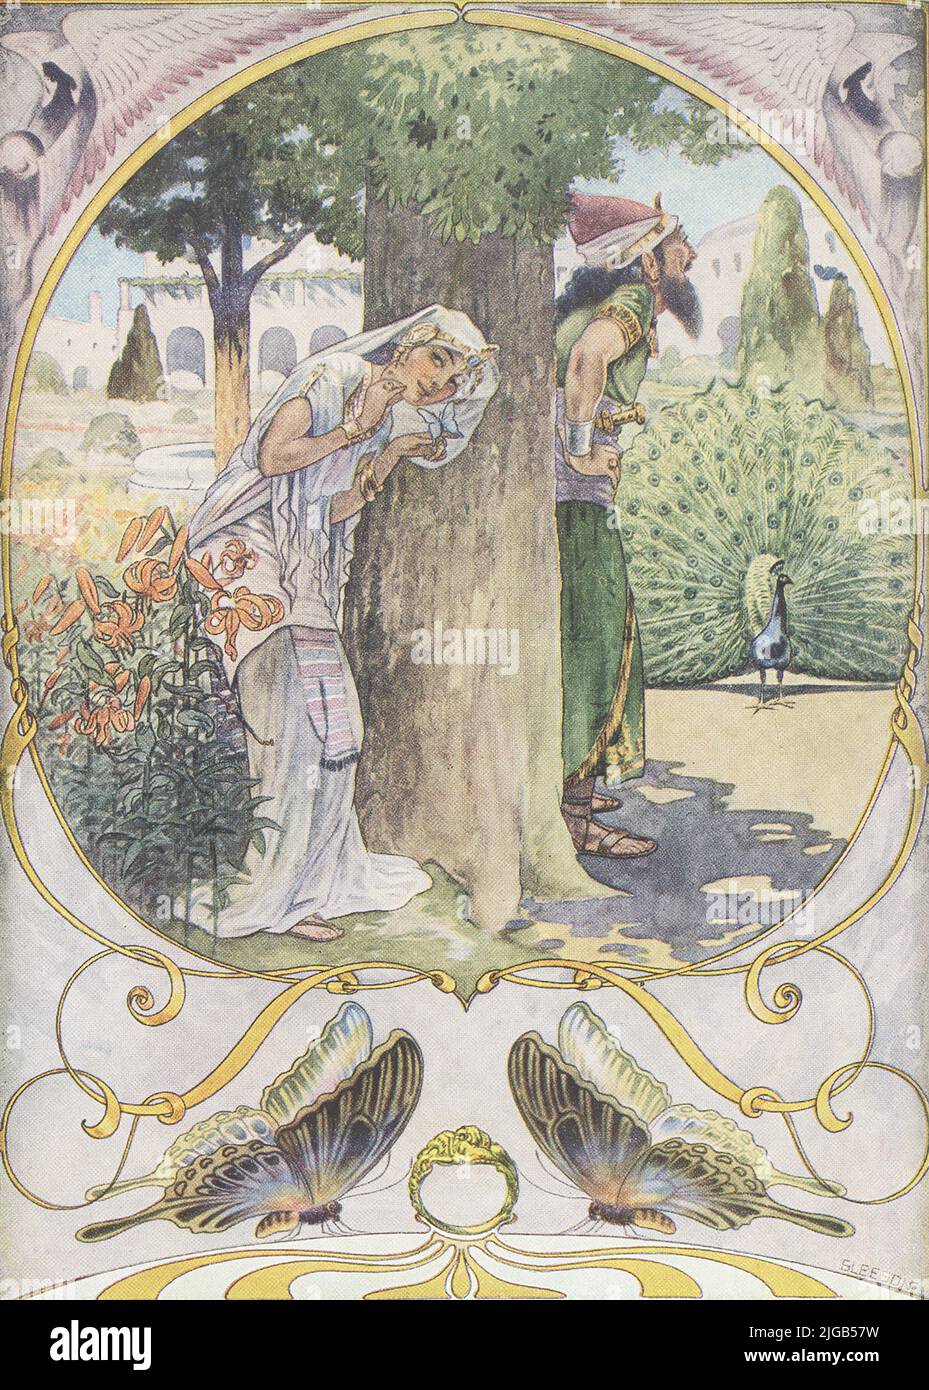 Esta imagen de 1912 de J M Gleeson ilustra la mariposa de Kipling que estampó. El rey Salomón era tan sabio que podía entender lo que decían todas las criaturas, así como rocas, árboles, plantas y personas, y su cabeza, la reina Balkis, era casi tan sabio como él. Llevaba un anillo mágico que le dio el poder de convocar a Djinns, Afritos, Hadas y el Arcángel Gabriel. Pero no estaba orgulloso, y si alguna vez se mostró, se arrepintió. Una vez trató de alimentar a todos los animales del mundo en un día, pero un animal salió del mar y gobbled toda la comida, comentando que en su familia eso era apenas un bocadillo, una lección que Foto de stock